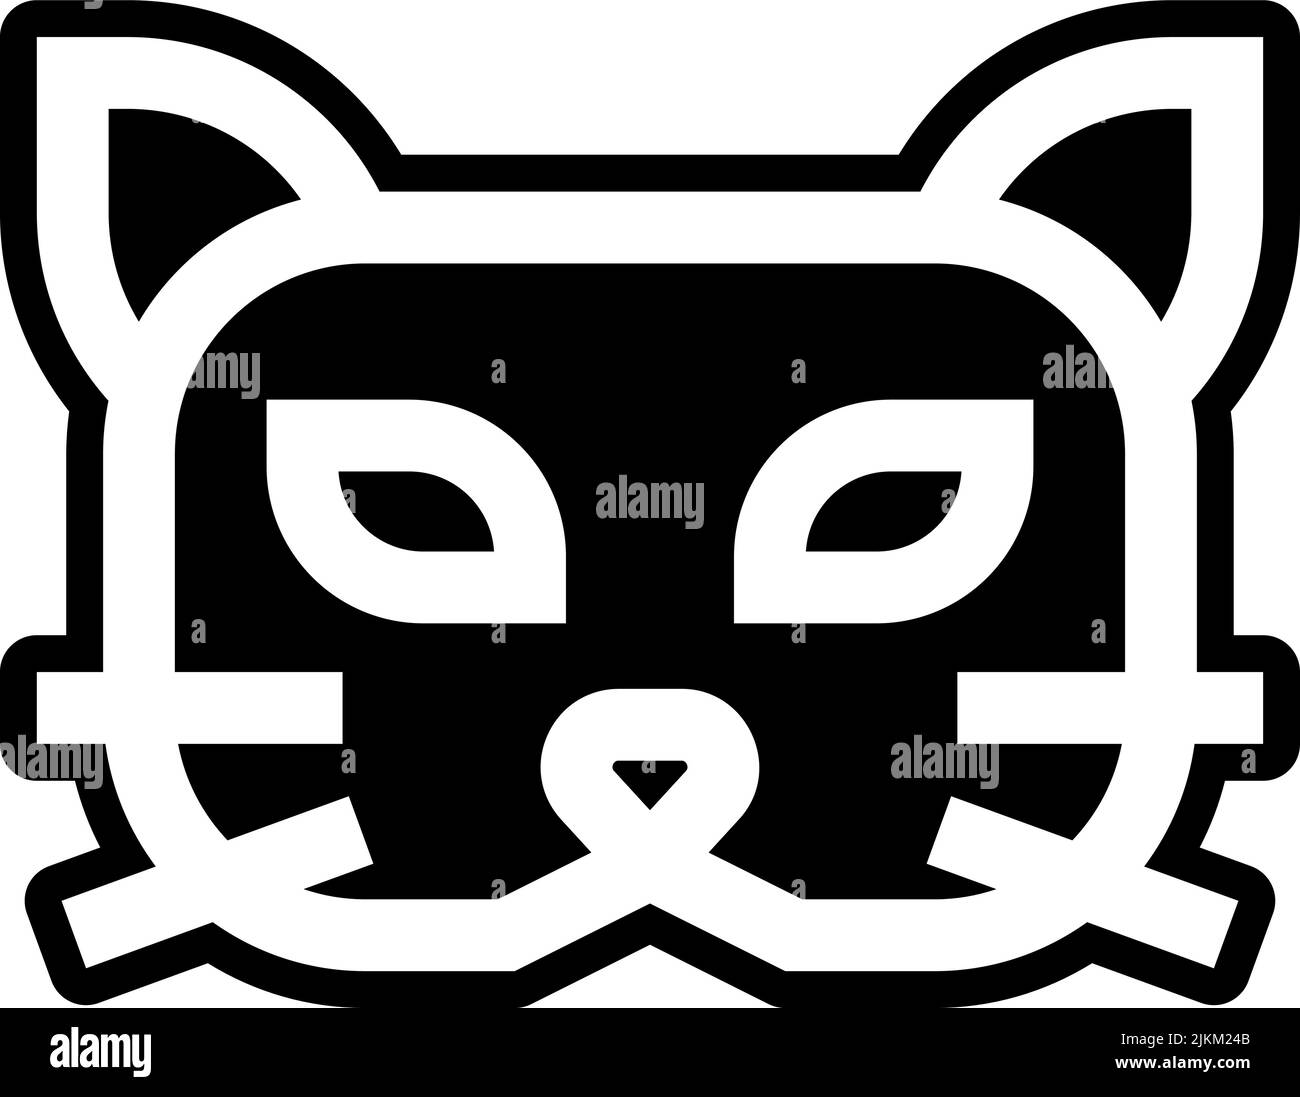 immagine vettoriale nera dell'icona della maschera cat. Illustrazione Vettoriale